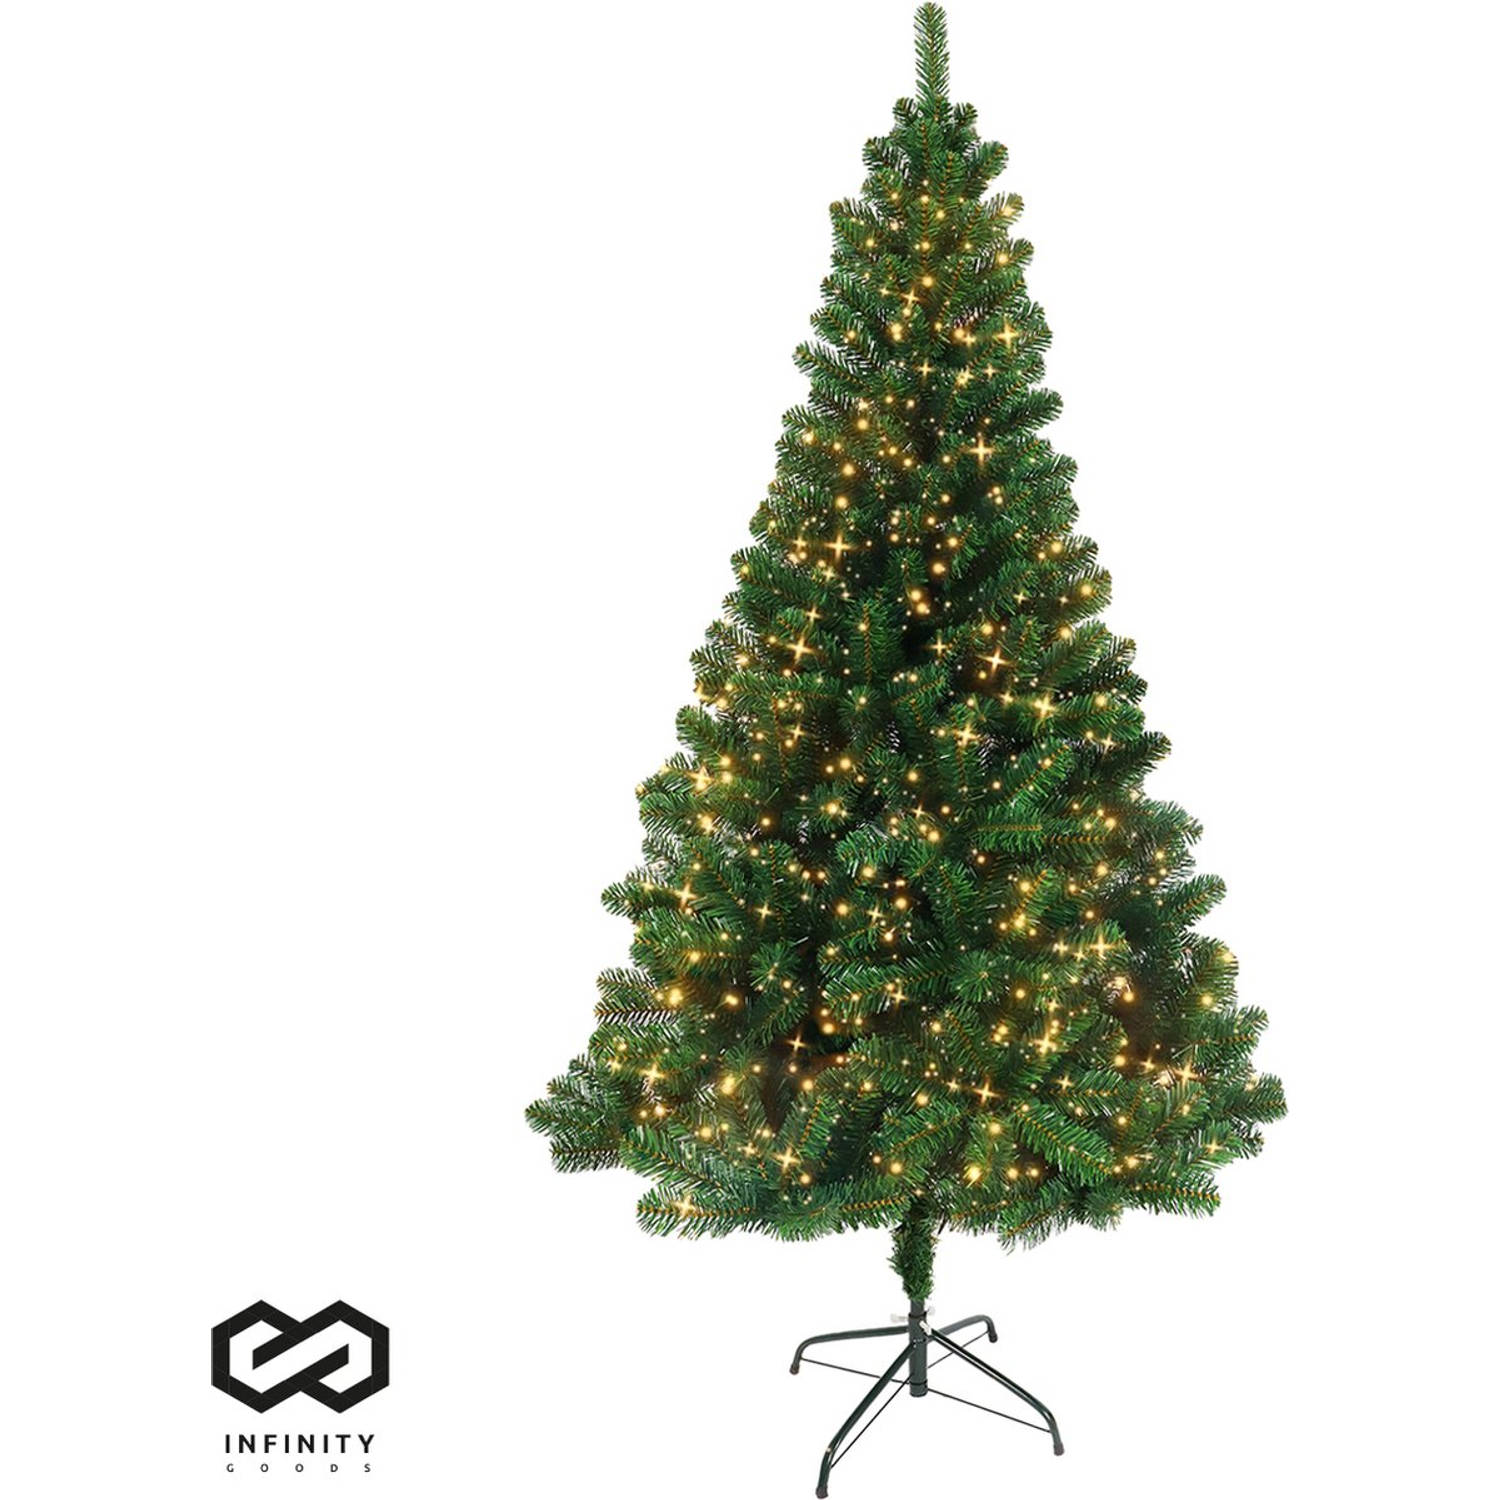 Infinity Goods Kunstkerstboom Met LED Verlichting - 180 cm - Realistische Kunststof Kerstboom - Metalen Standaard -